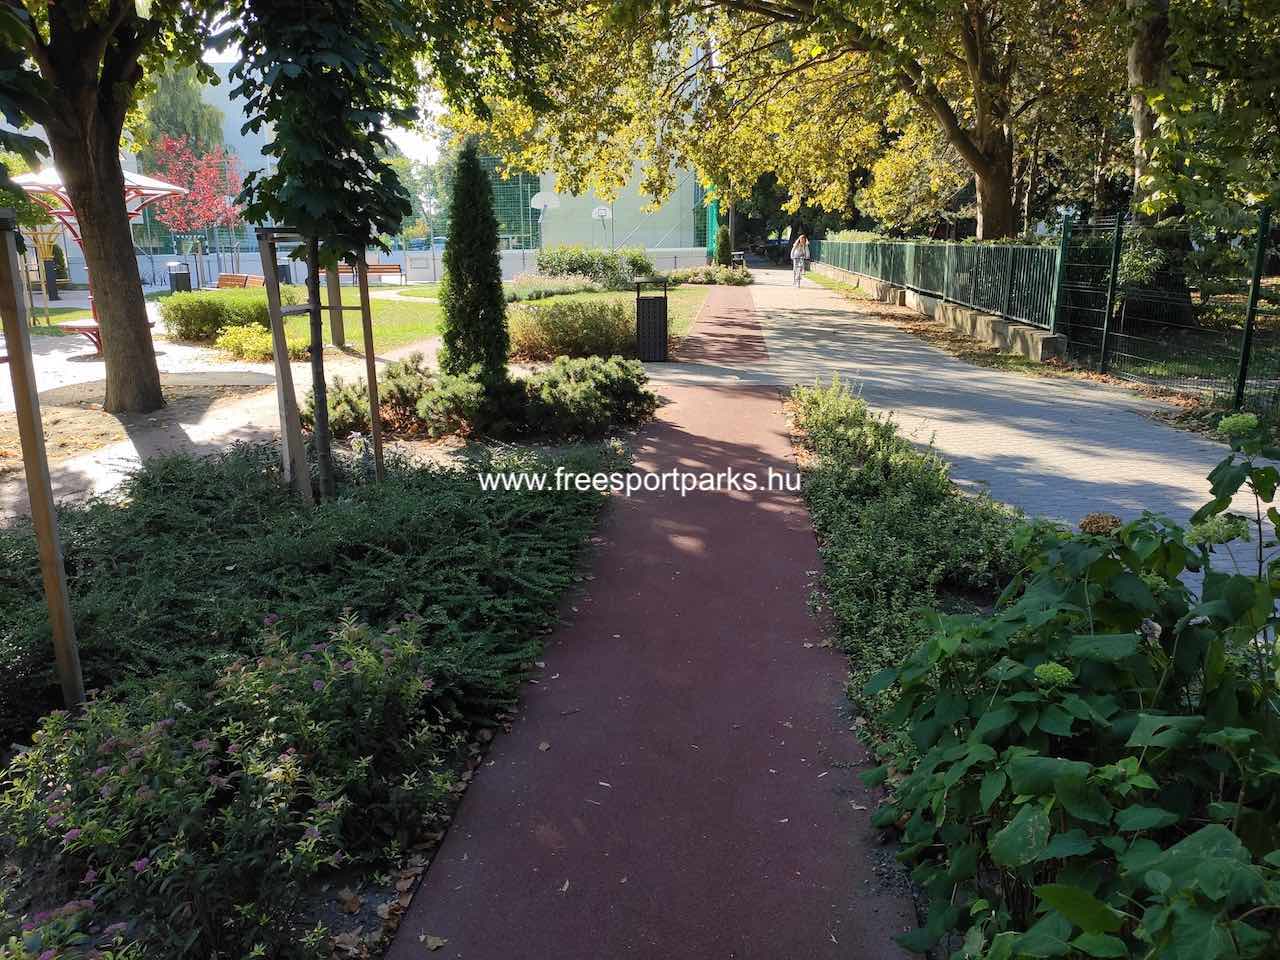 rekortán futópálya egyik egyenes szakasza - Say Ferenc utcai park, Siófok - Free Sport Parks térkép